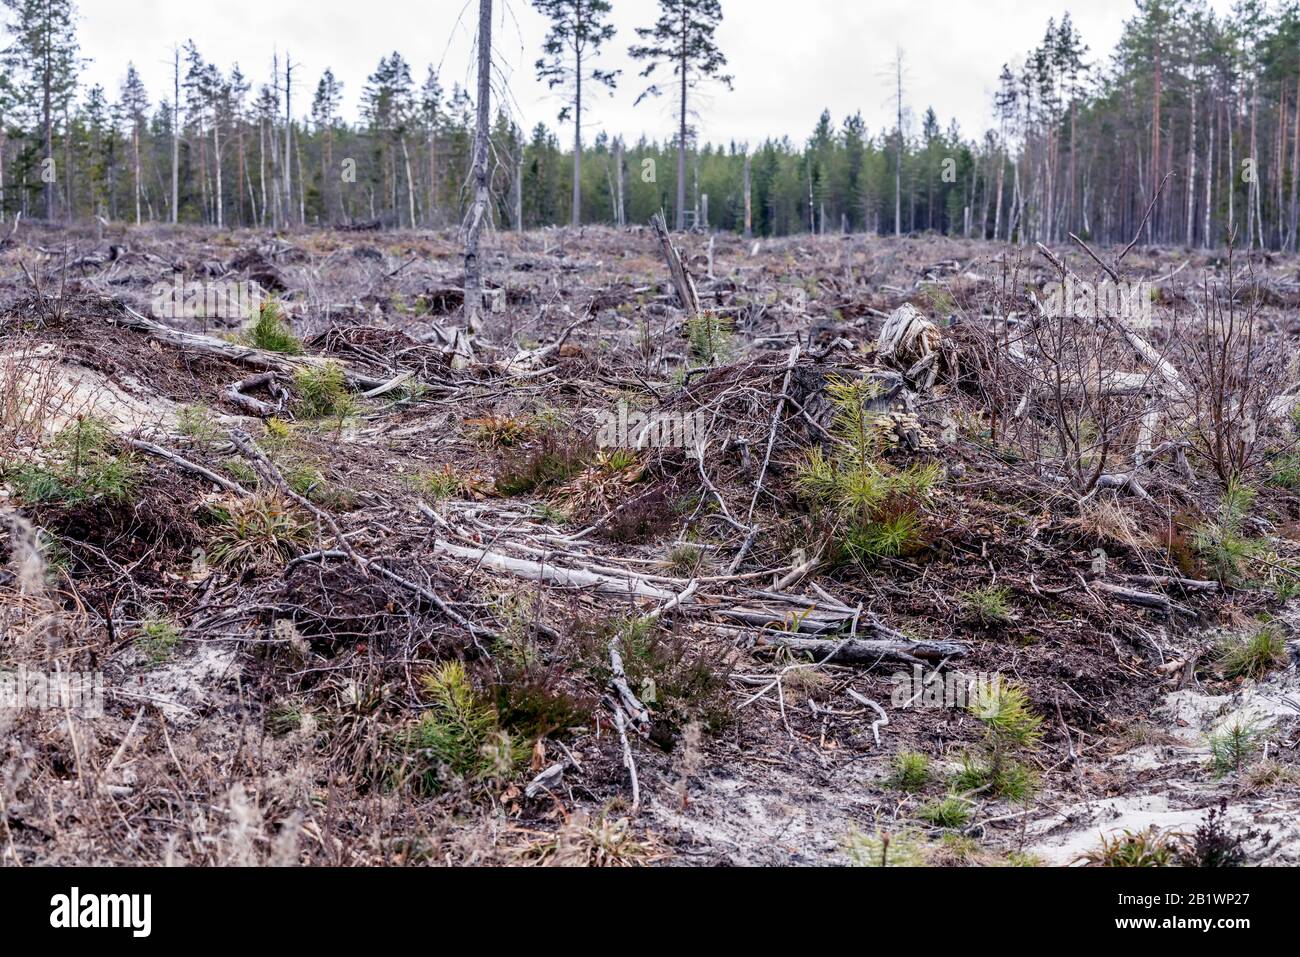 Les branches brunes des vieux pins ont quitté il y a un an la forêt claire coupée dans le nord de la Suède, fin de l'automne, pas d'arbres vivants laissés - juste en champ vide. Nouveau p Banque D'Images